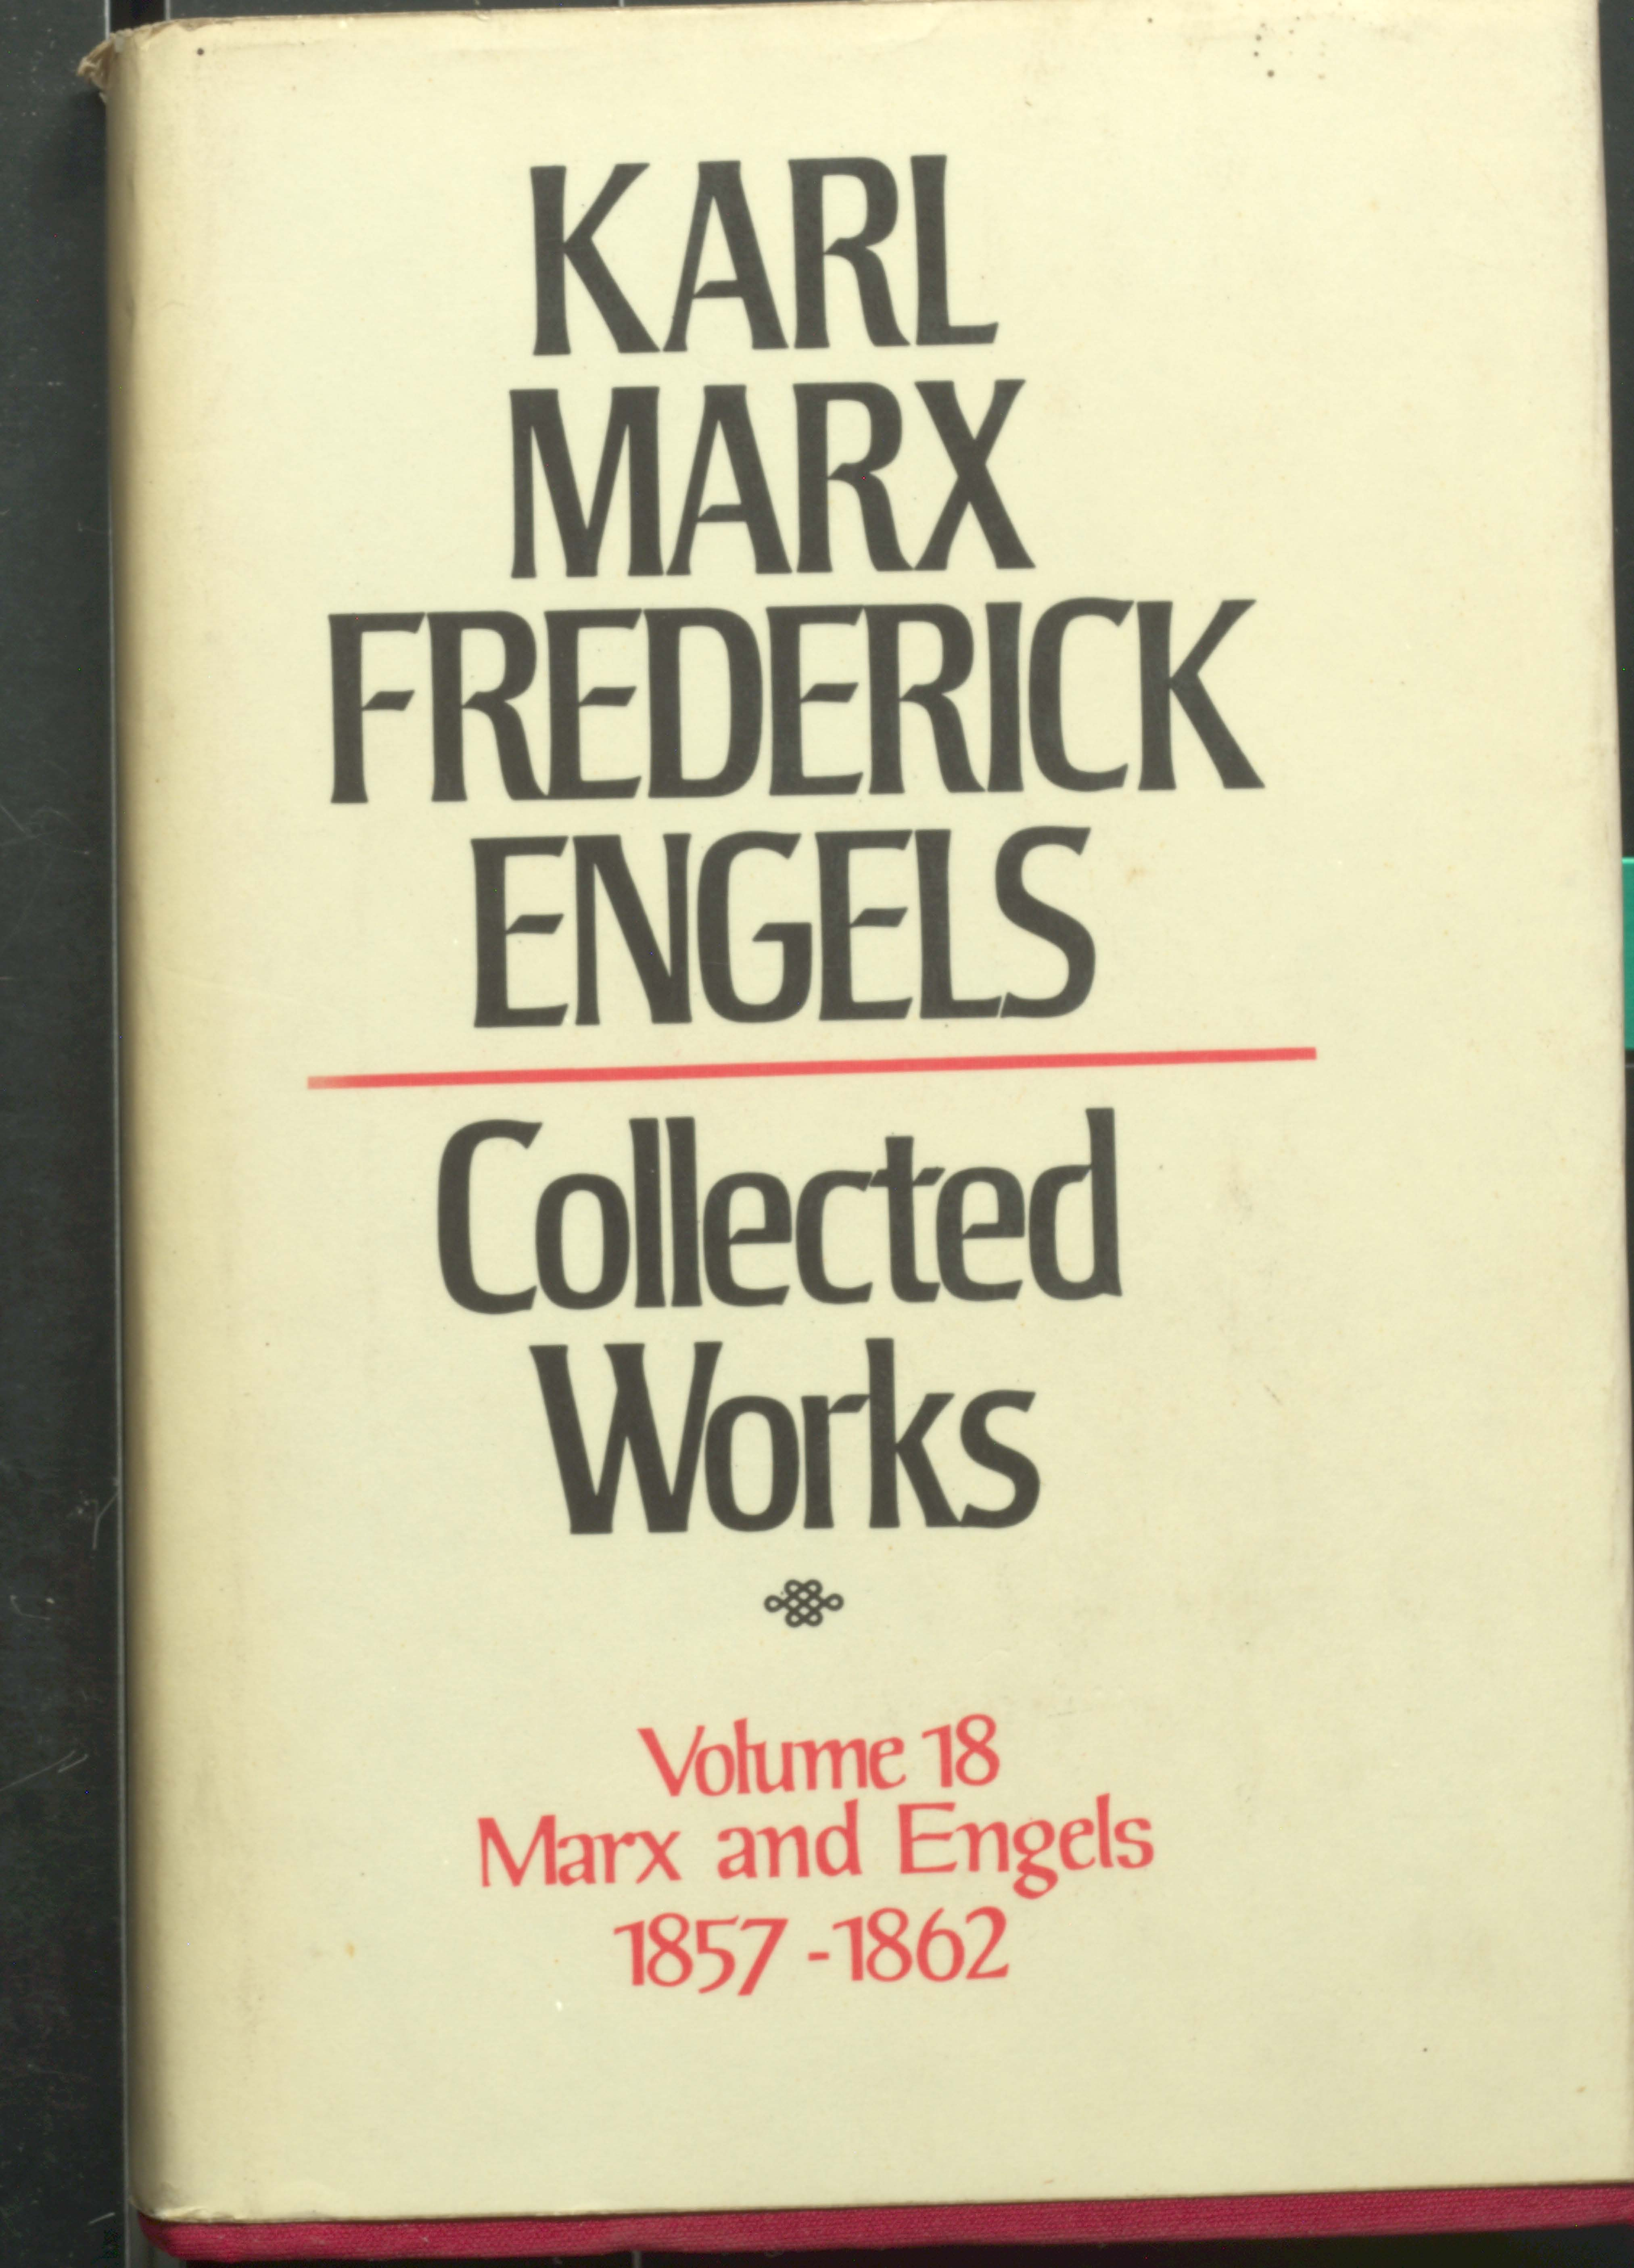 KARL MARX TREDERIEK ENGELS COLLECTED WORKS (VOL-18)1852-1862